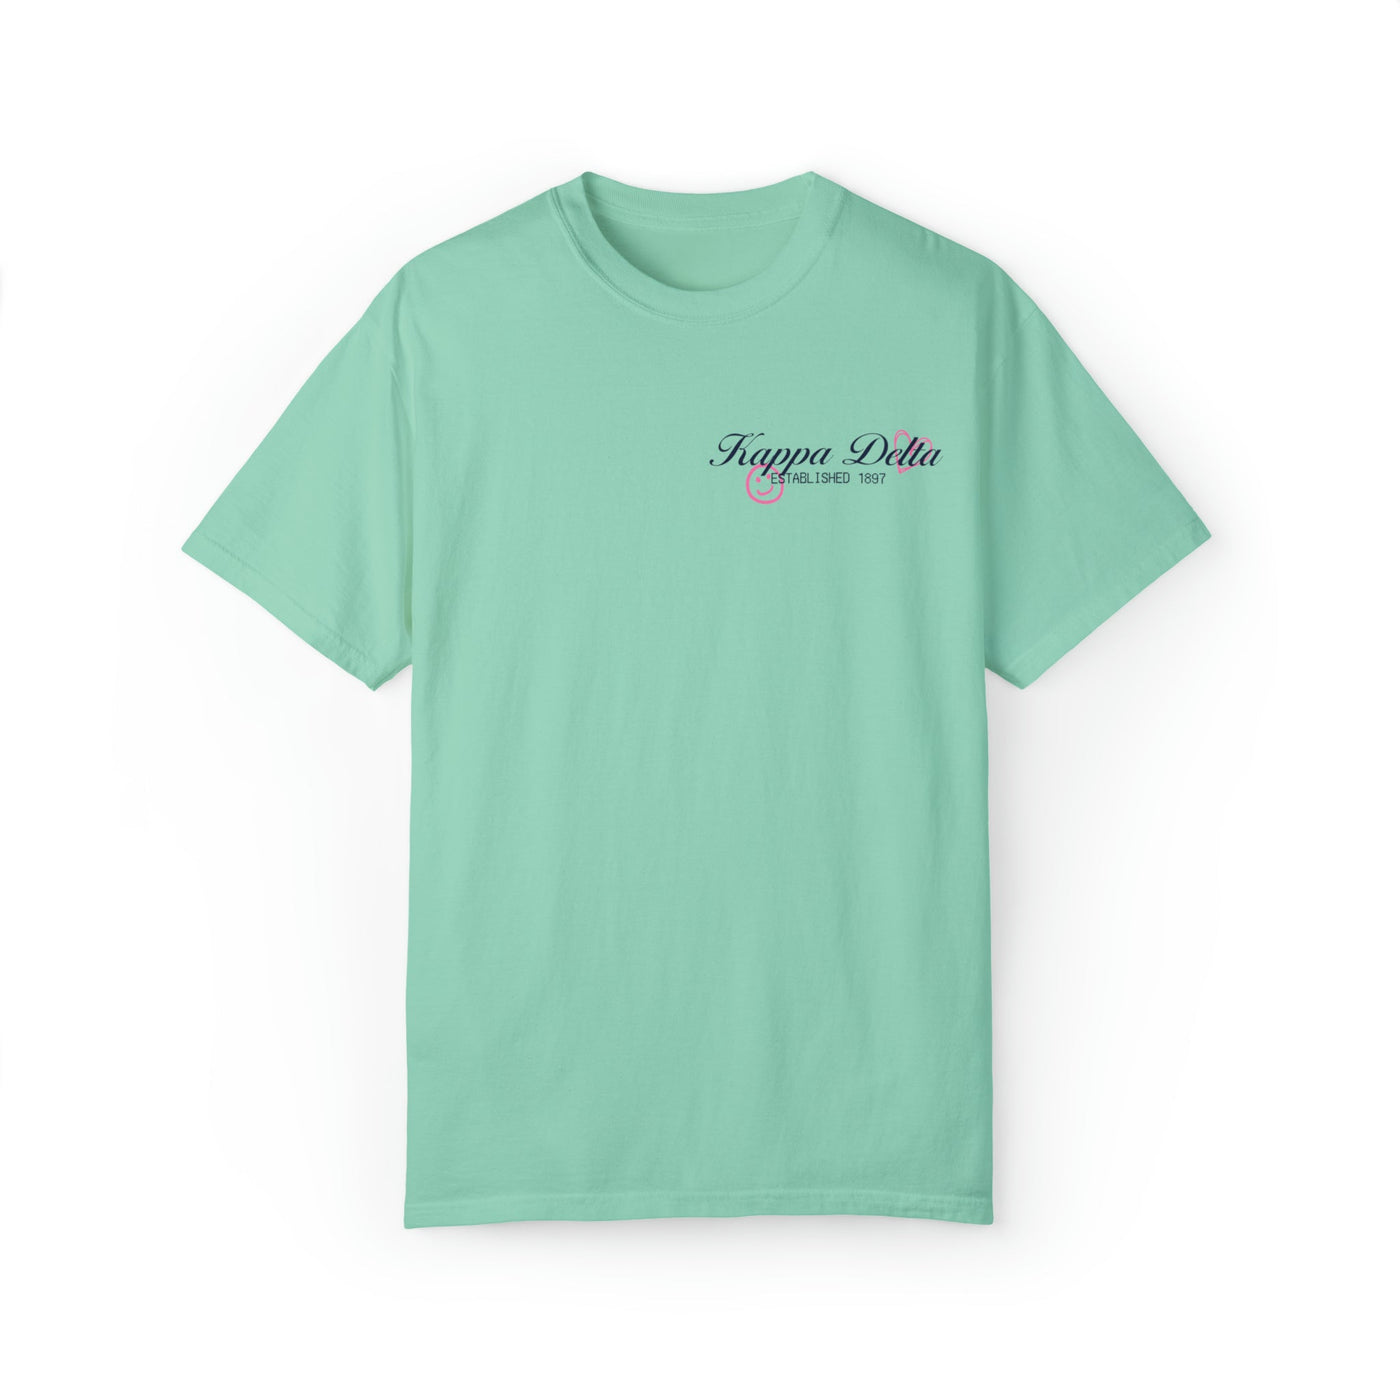 Kappa Delta Sorority Receipt Comfy T-shirt